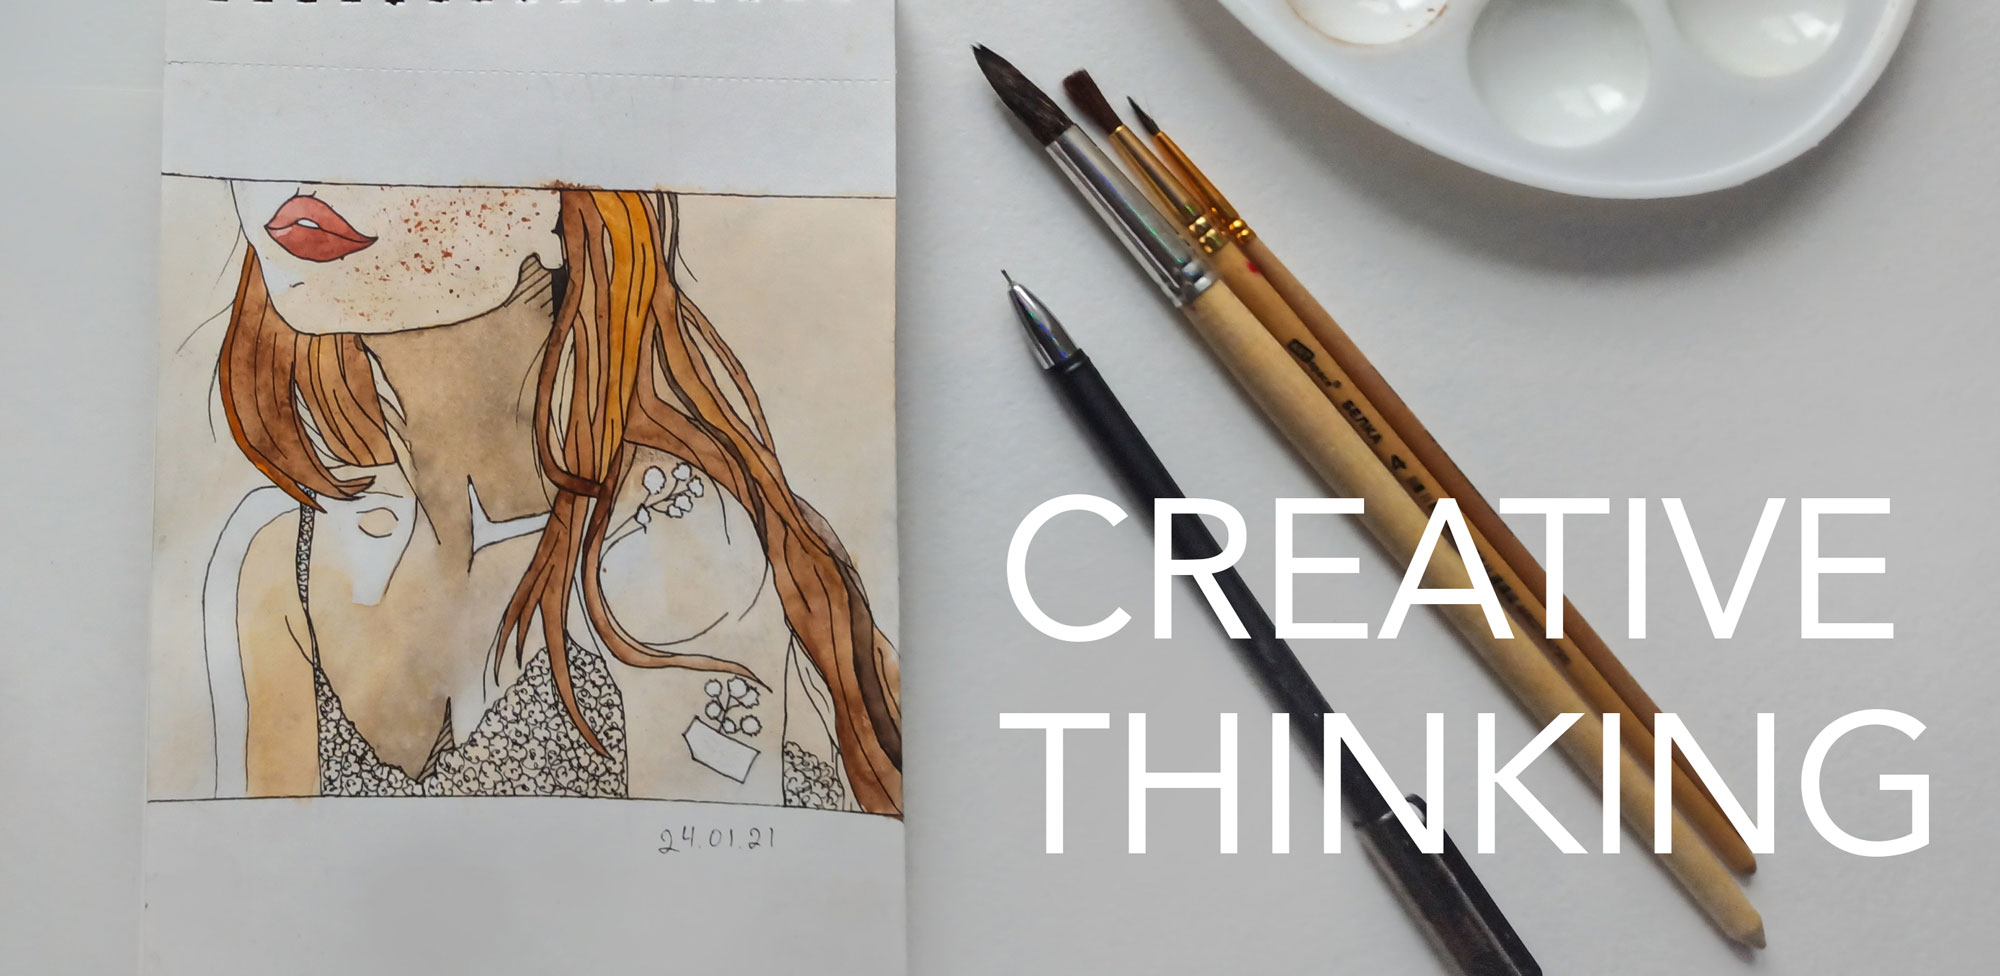 sketchbook drawing creative thinking thumbnail